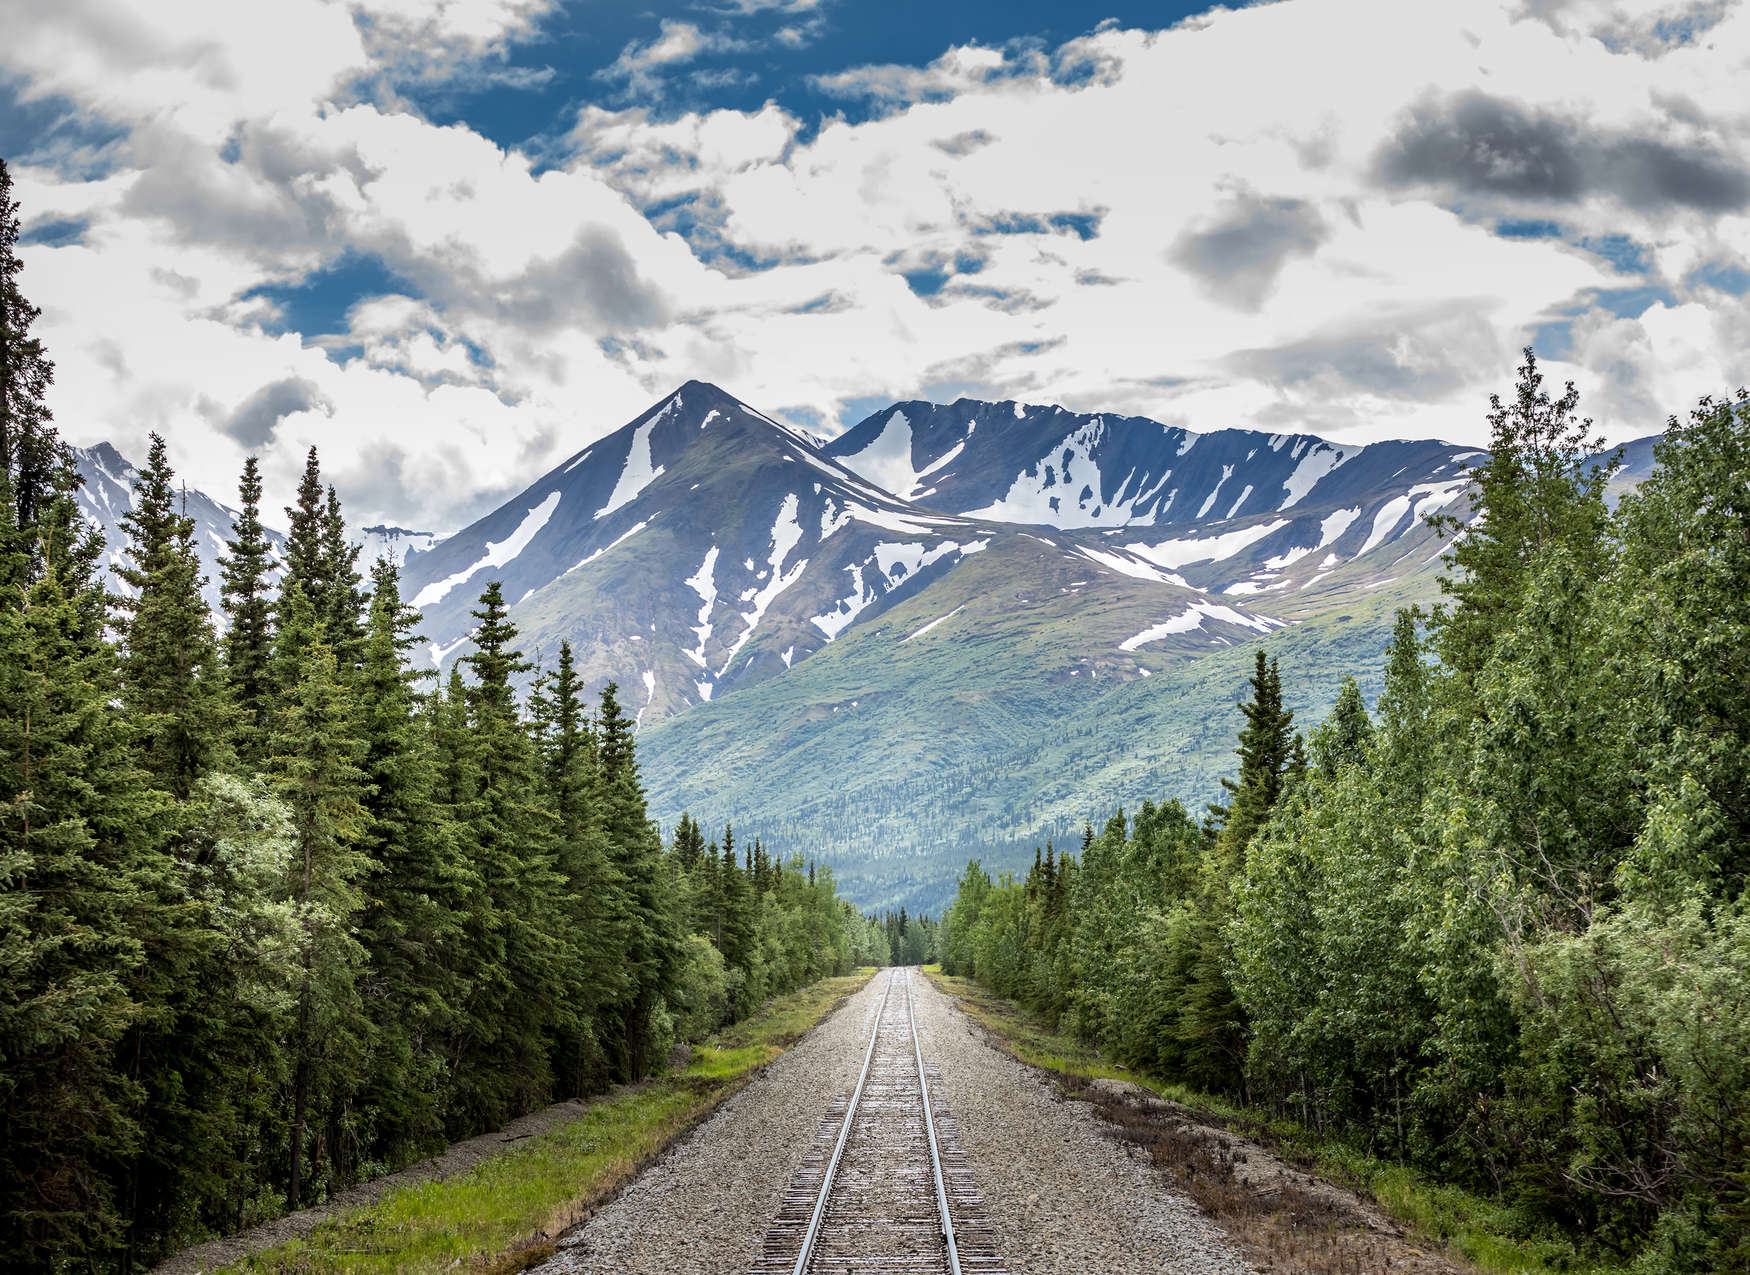             Papier peint panoramique avec voie ferrée traversant une forêt à la montagne - vert, bleu, gris
        